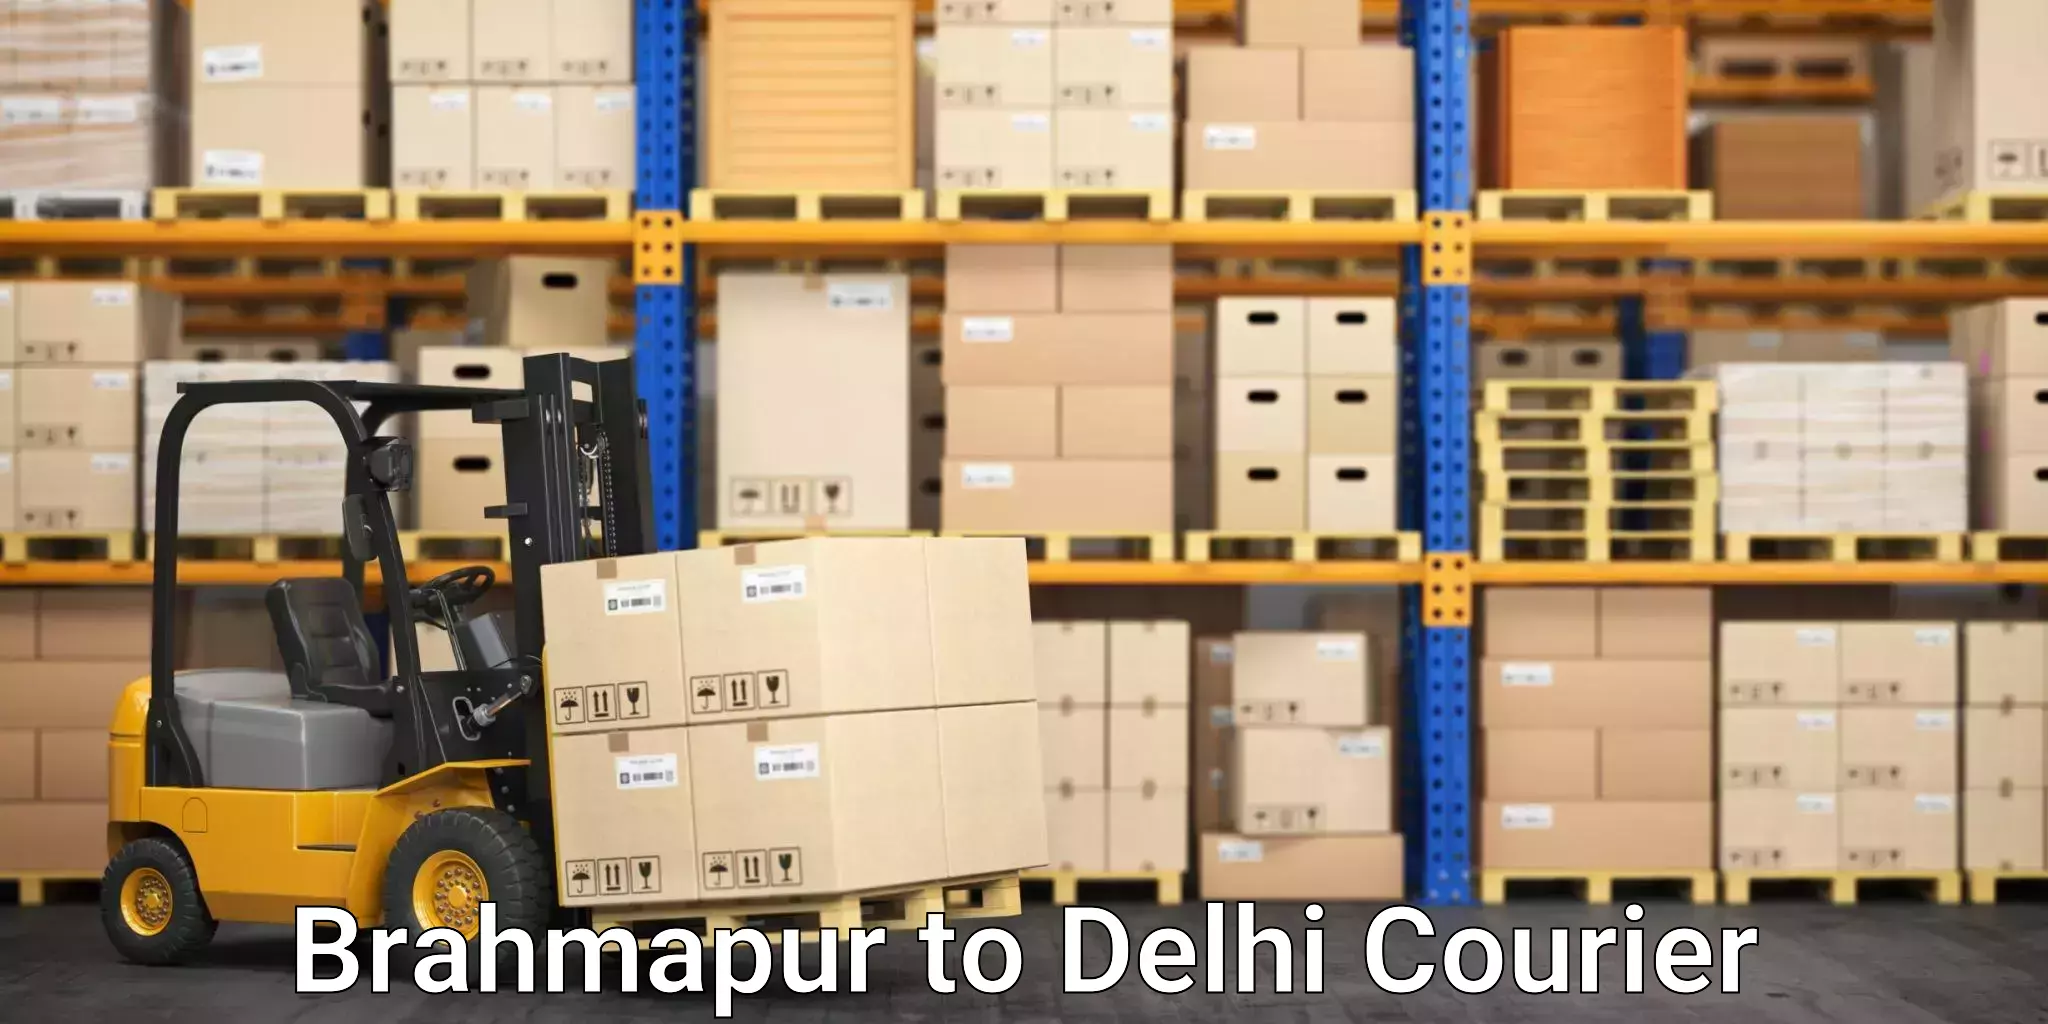 Professional packing services Brahmapur to Jamia Millia Islamia New Delhi